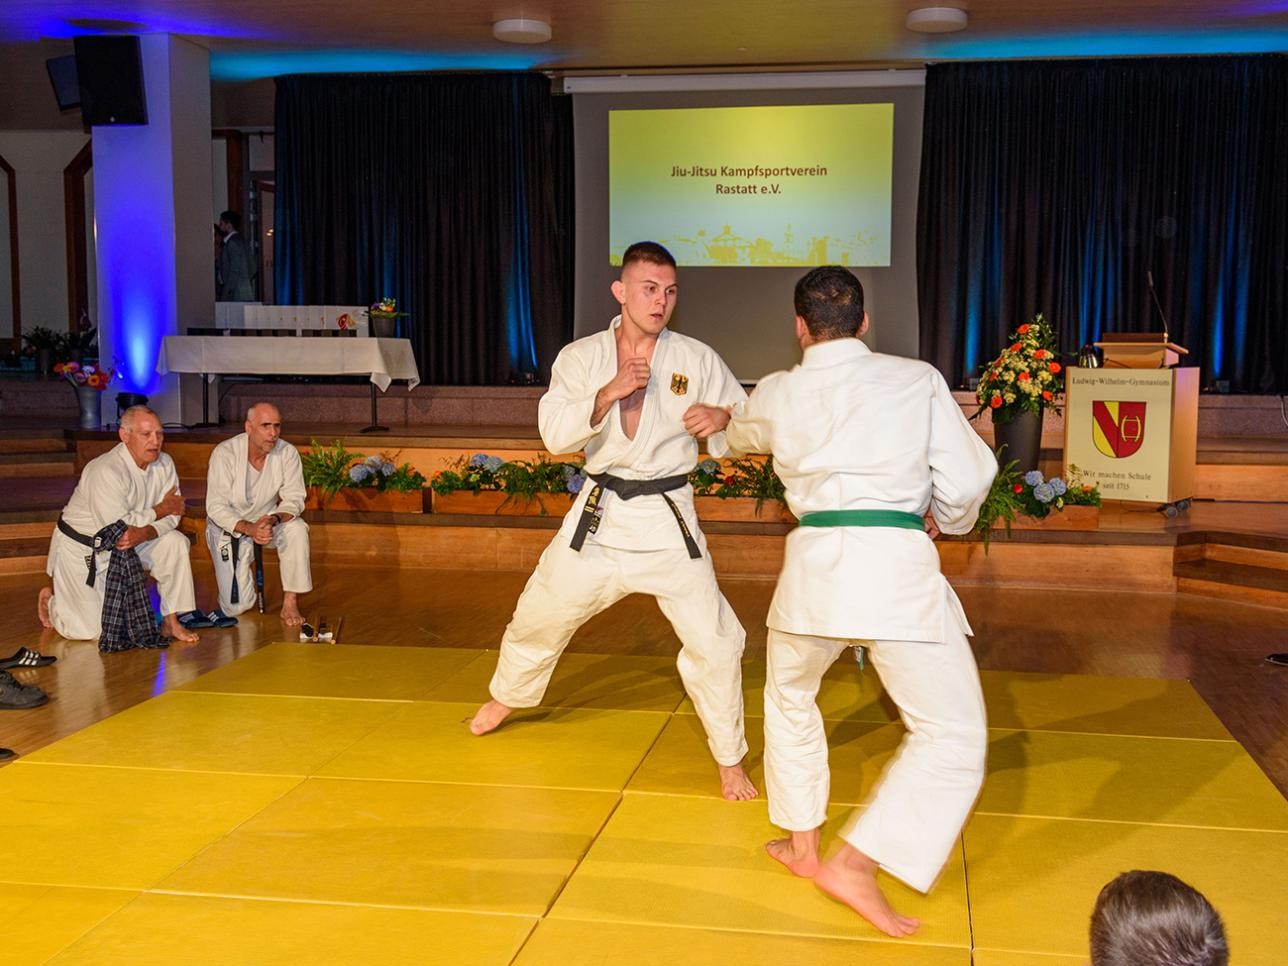 Démonstration de jiu-jitsu Club d'arts martiaux de Rastatt e.V.